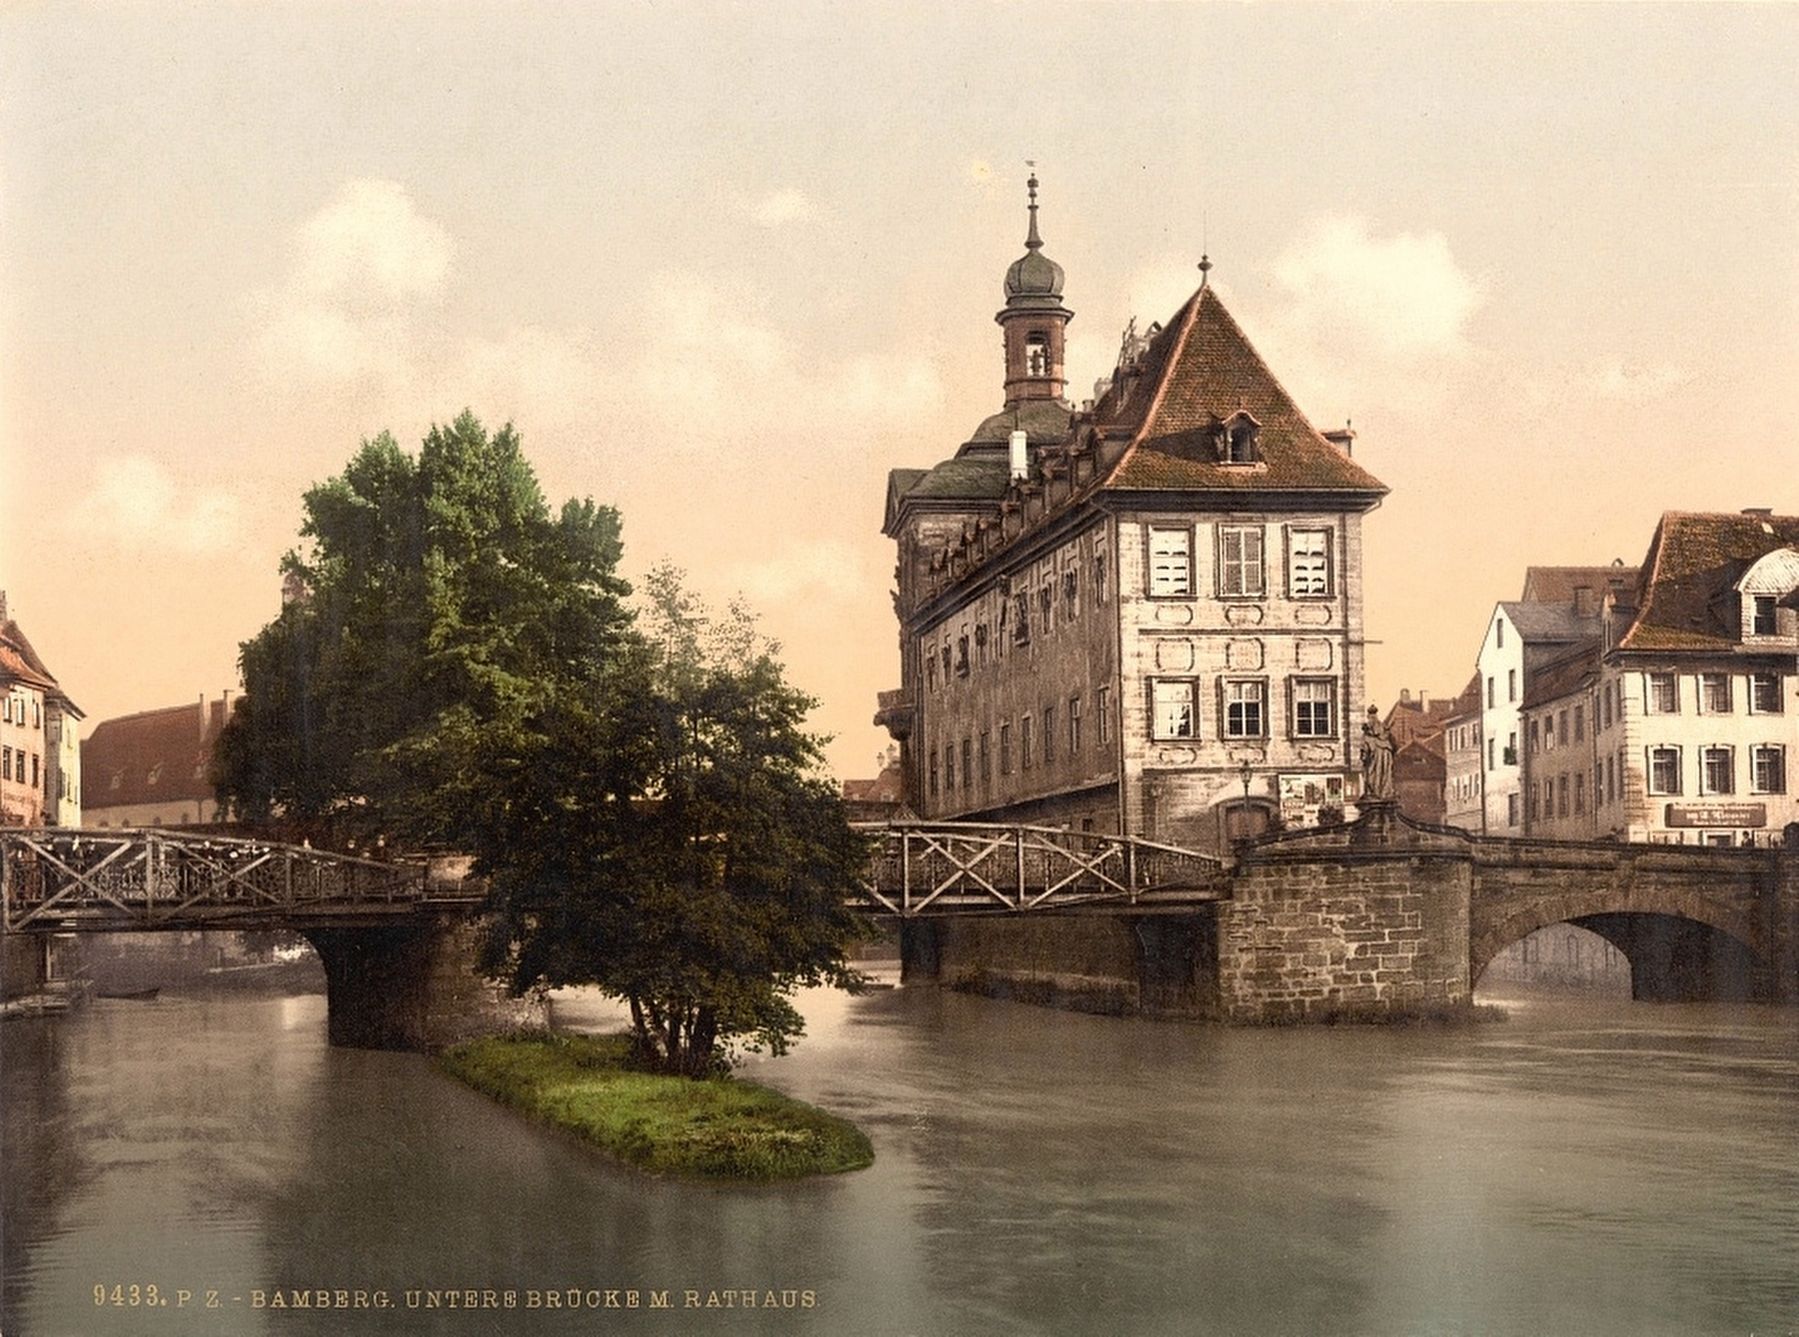 <i>Lower bridge and rathhaus, Bamberg, Bavaria, Germany</i> image. Click for full size.